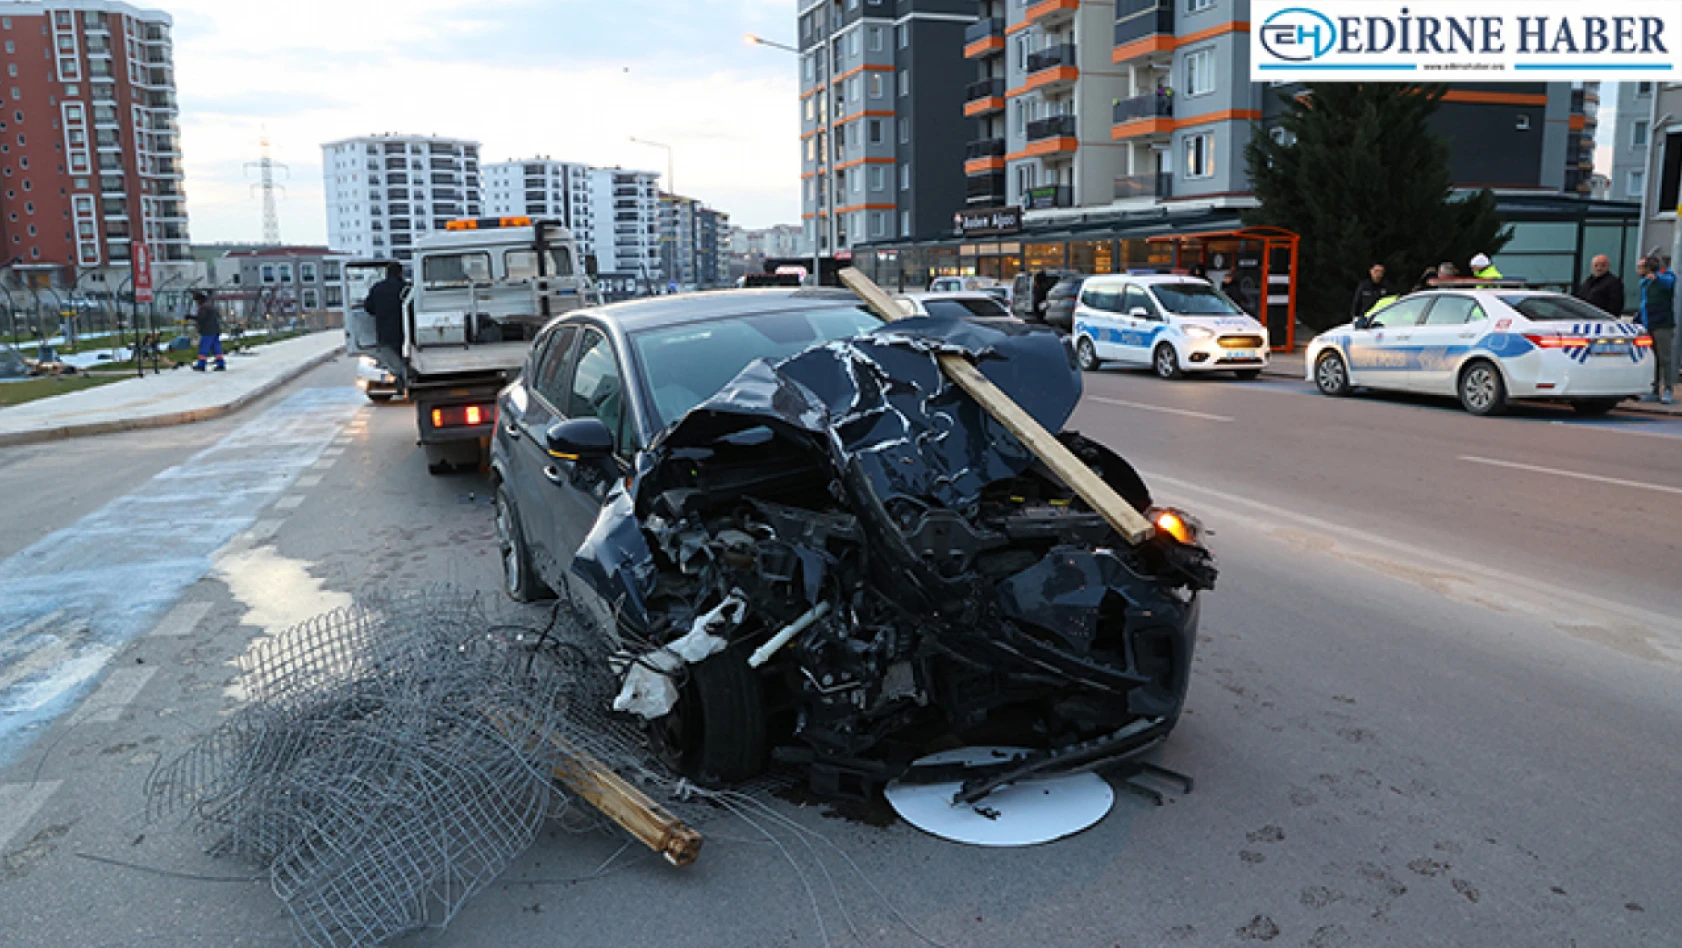 Edirne'de alkollü sürücü otomobille çarptığı çocuk parkında hasara yol açtı